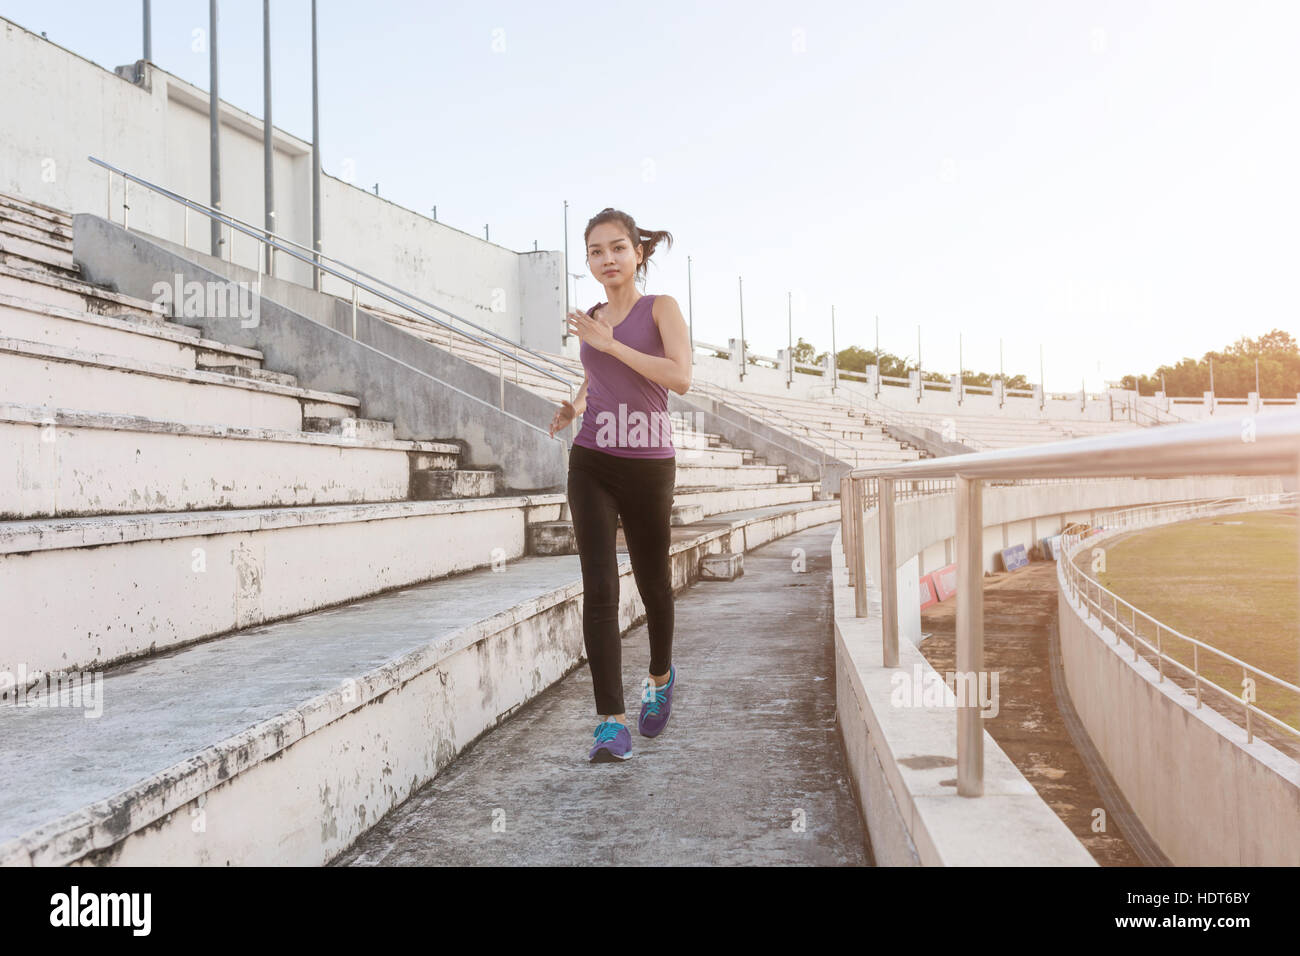 Frauen-Läufer sprinten im Freien. Sportliche Menschen eine Ausbildung in einer Stadtregion gesunden Lebensweise und Sport-Konzepte. Stockfoto